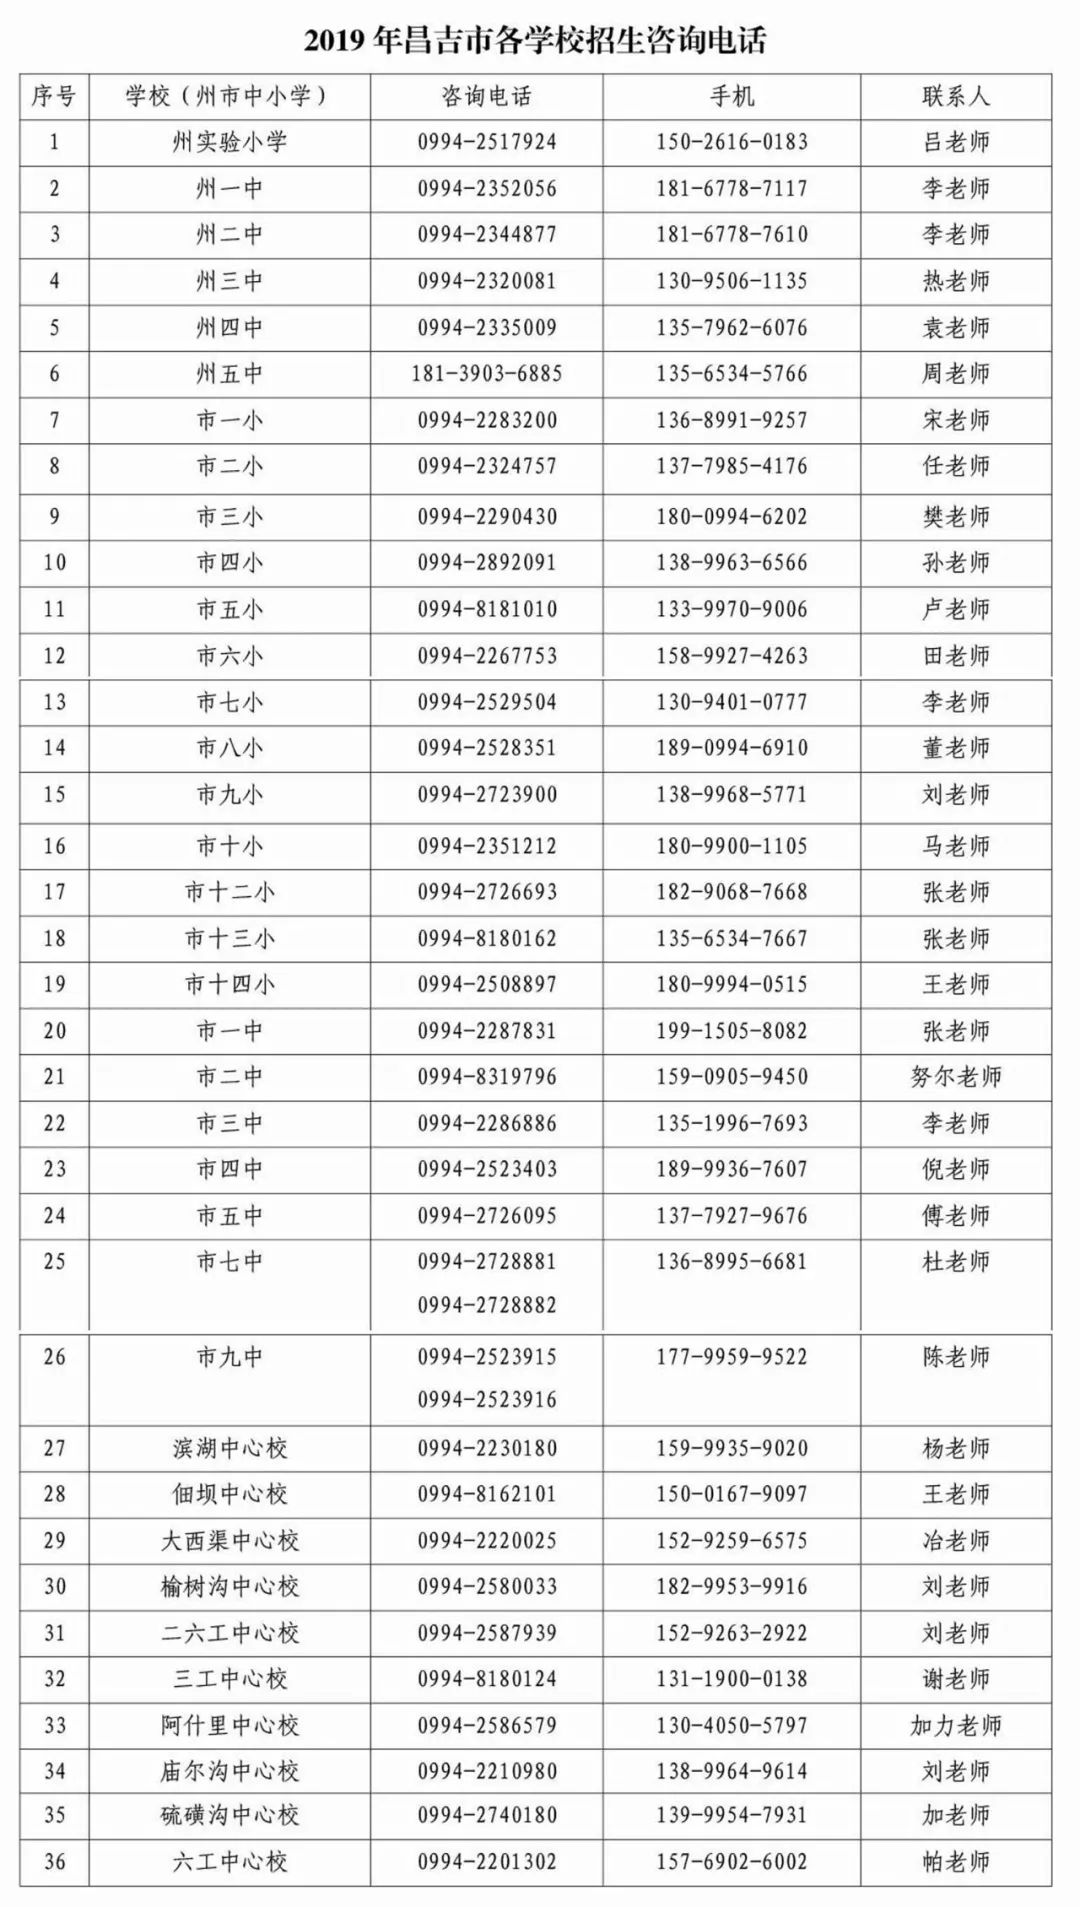 2019年昌吉市中小学,幼儿园招生政策出台!附最新学区划分!